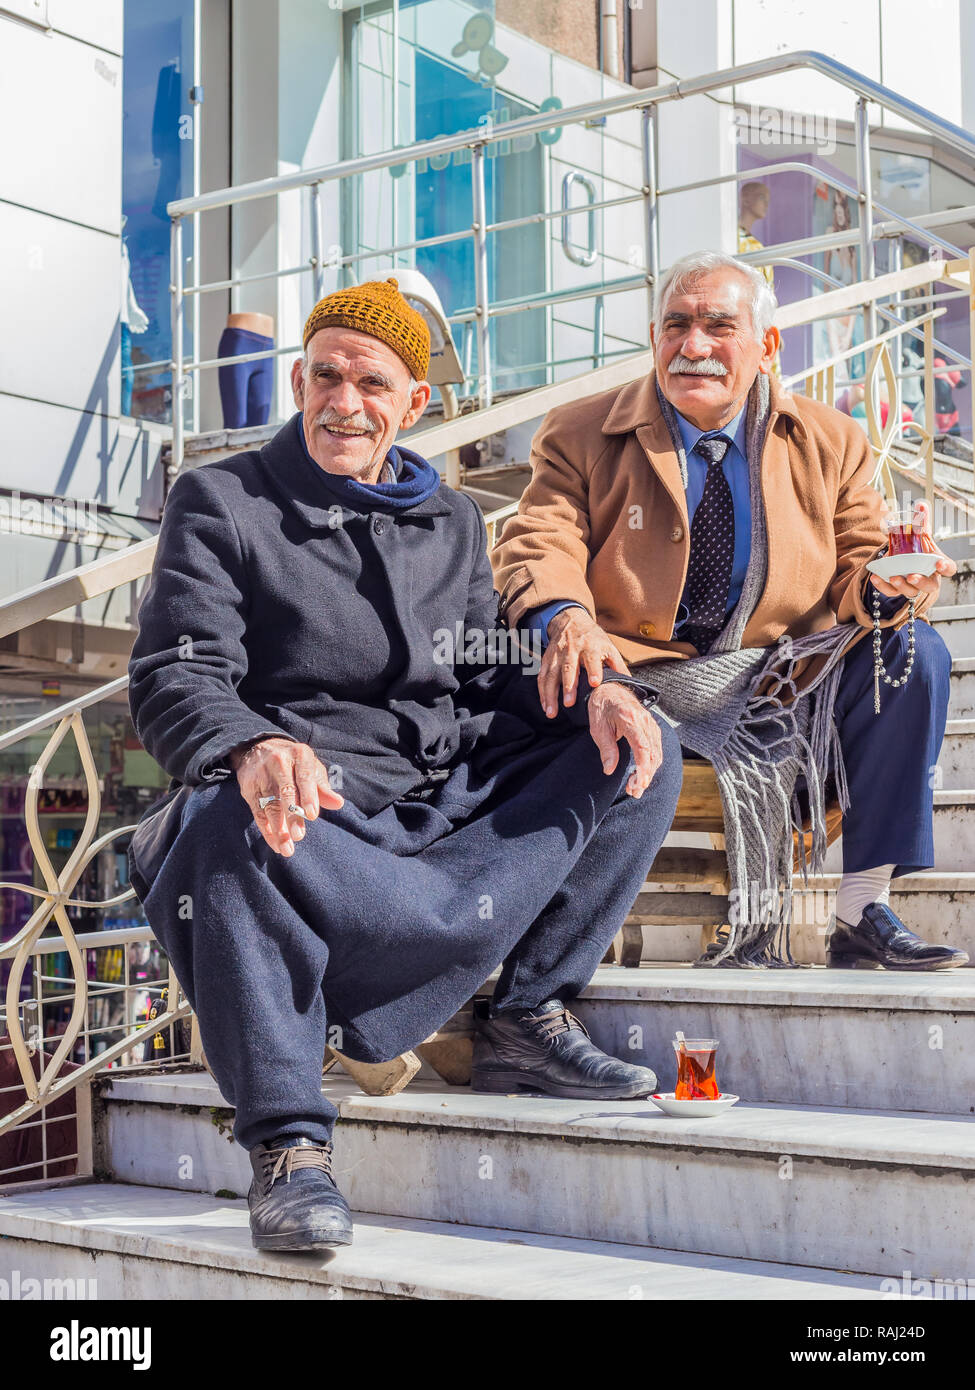 Istanbul, Türkei, 24. Februar 2015: Zwei ältere türkische Männer auf einige Schritte sitzen, trinken türkischen Tee. Stockfoto